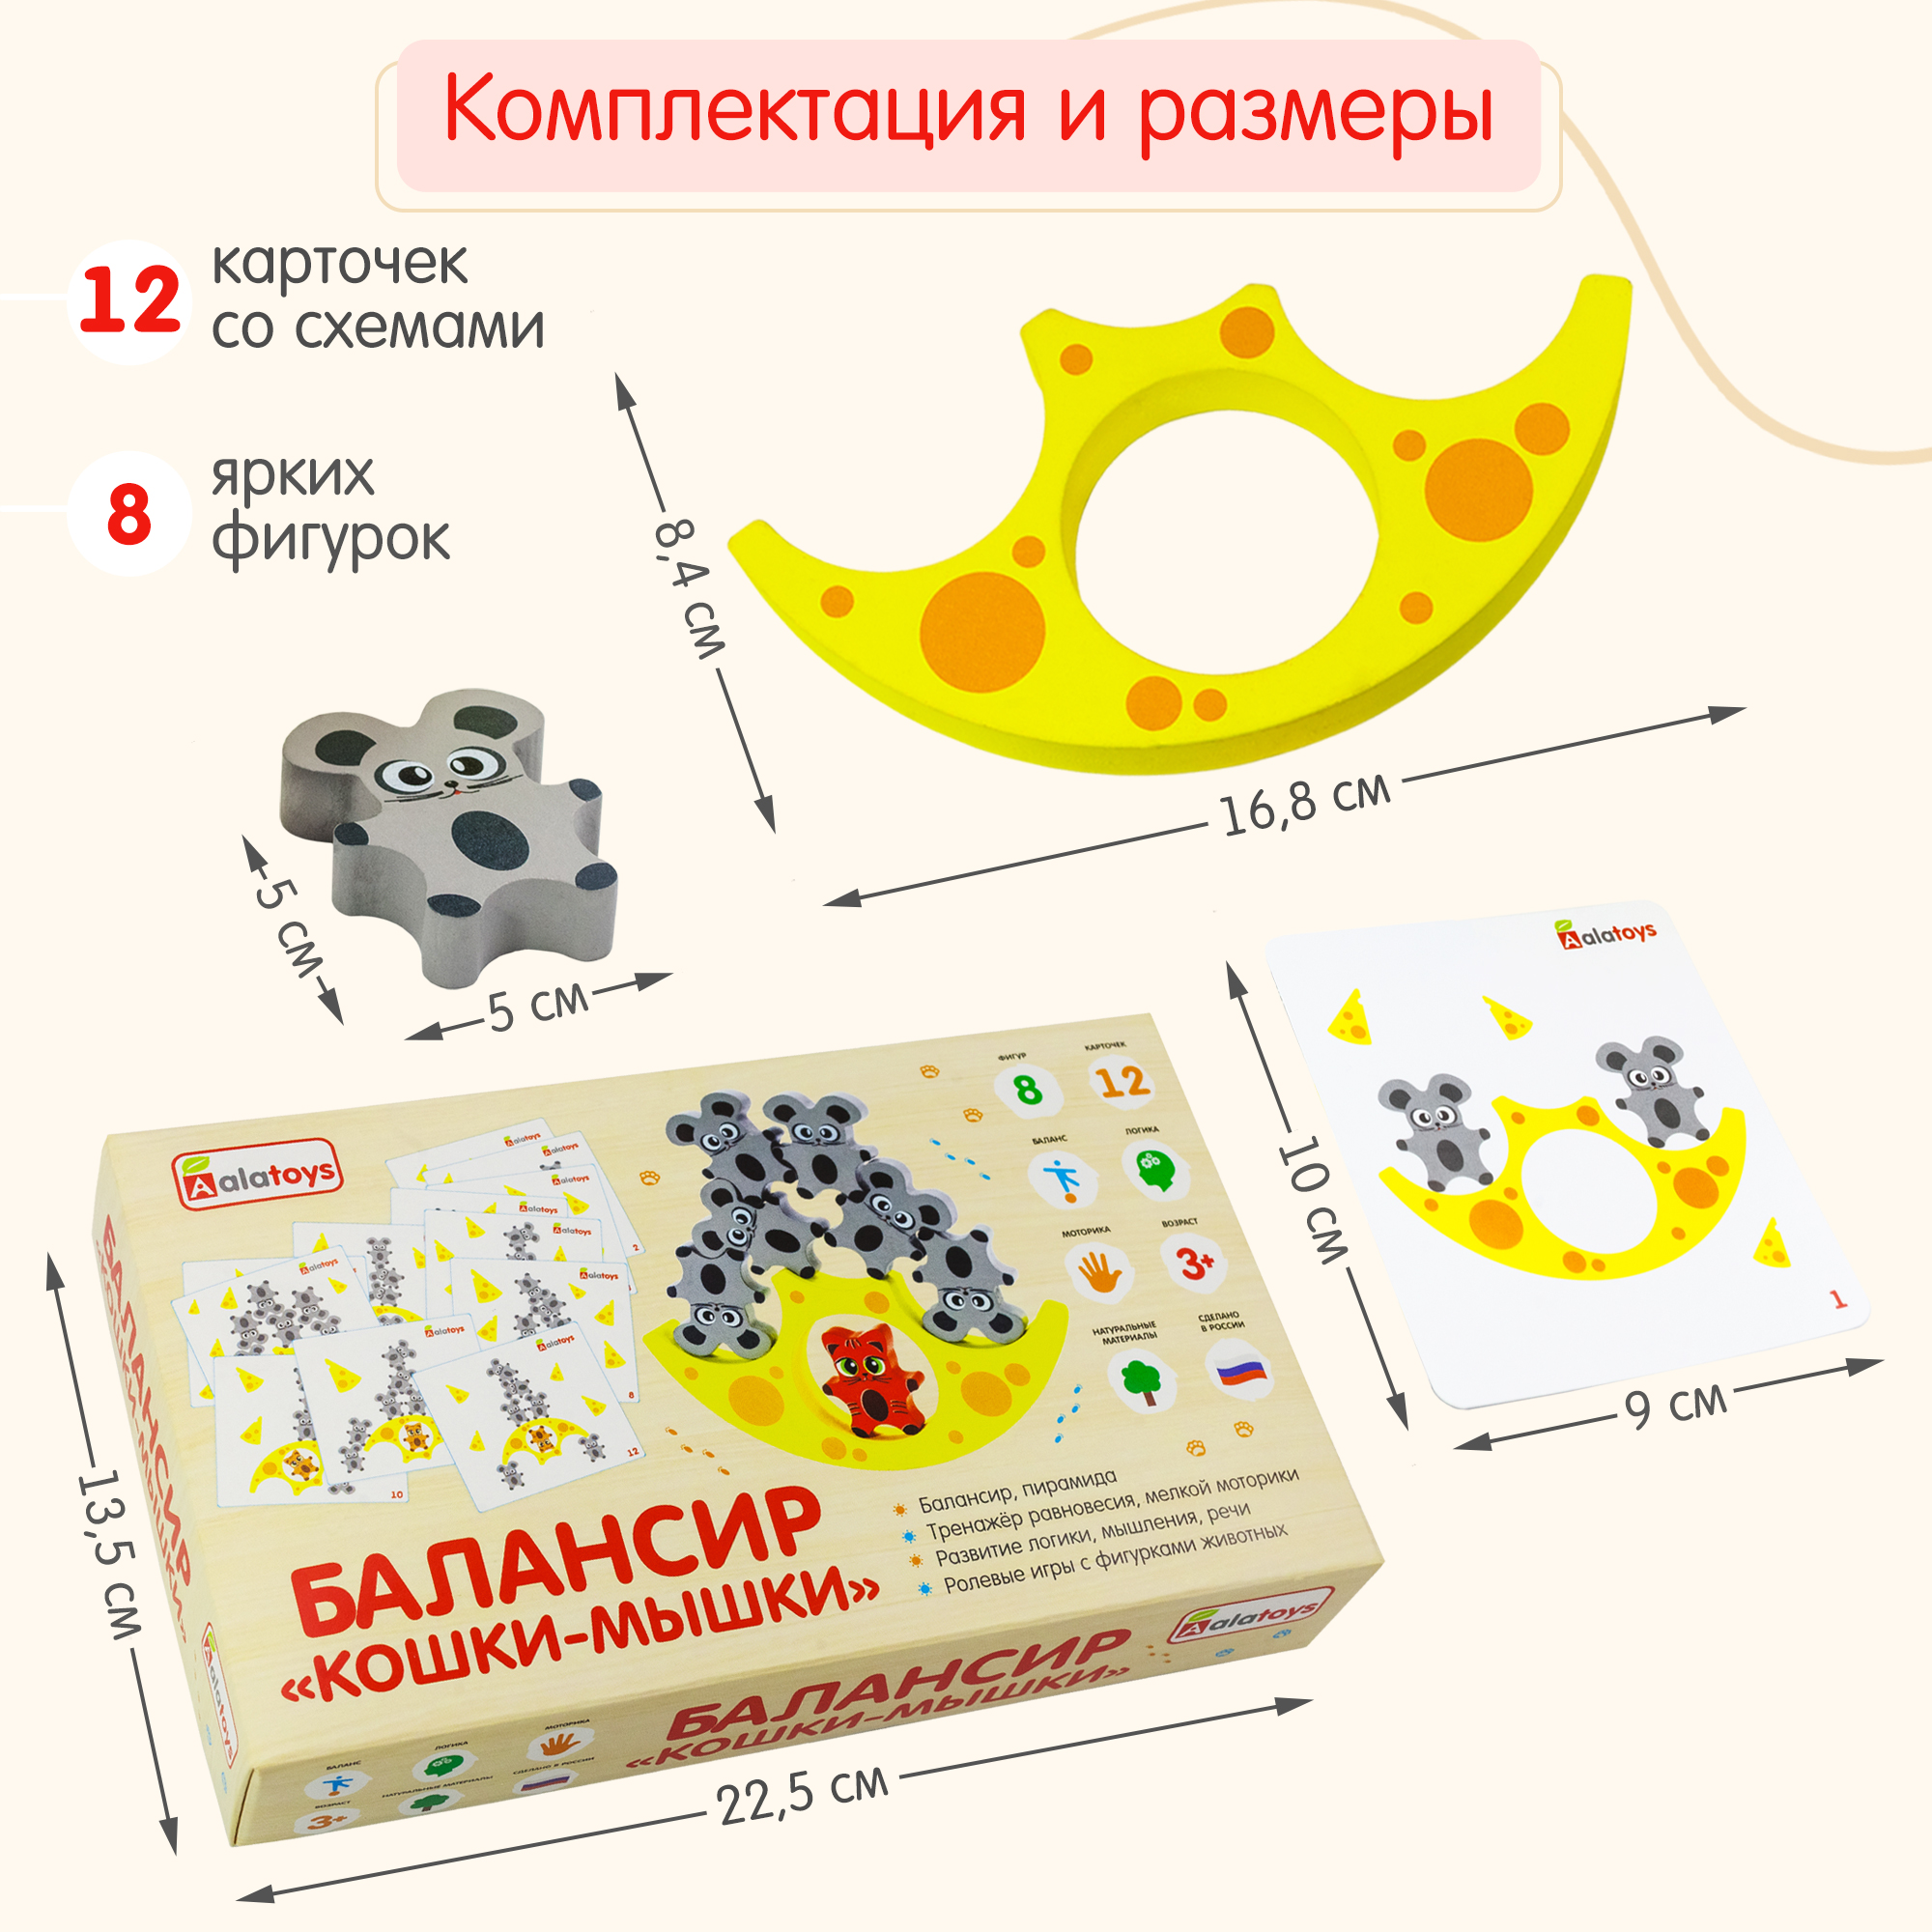 Балансир Кошки-Мышки Алатойс 8 фигурок деревянная развивающая игра - фото 11